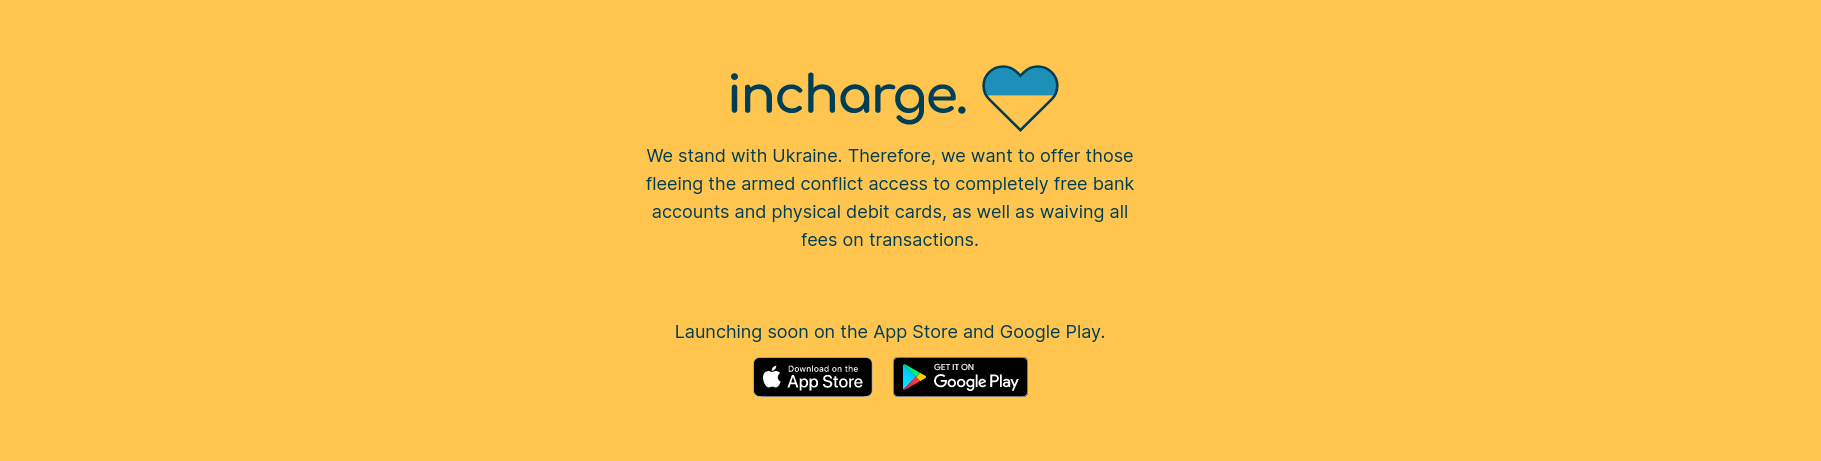 bank app ukrainians account